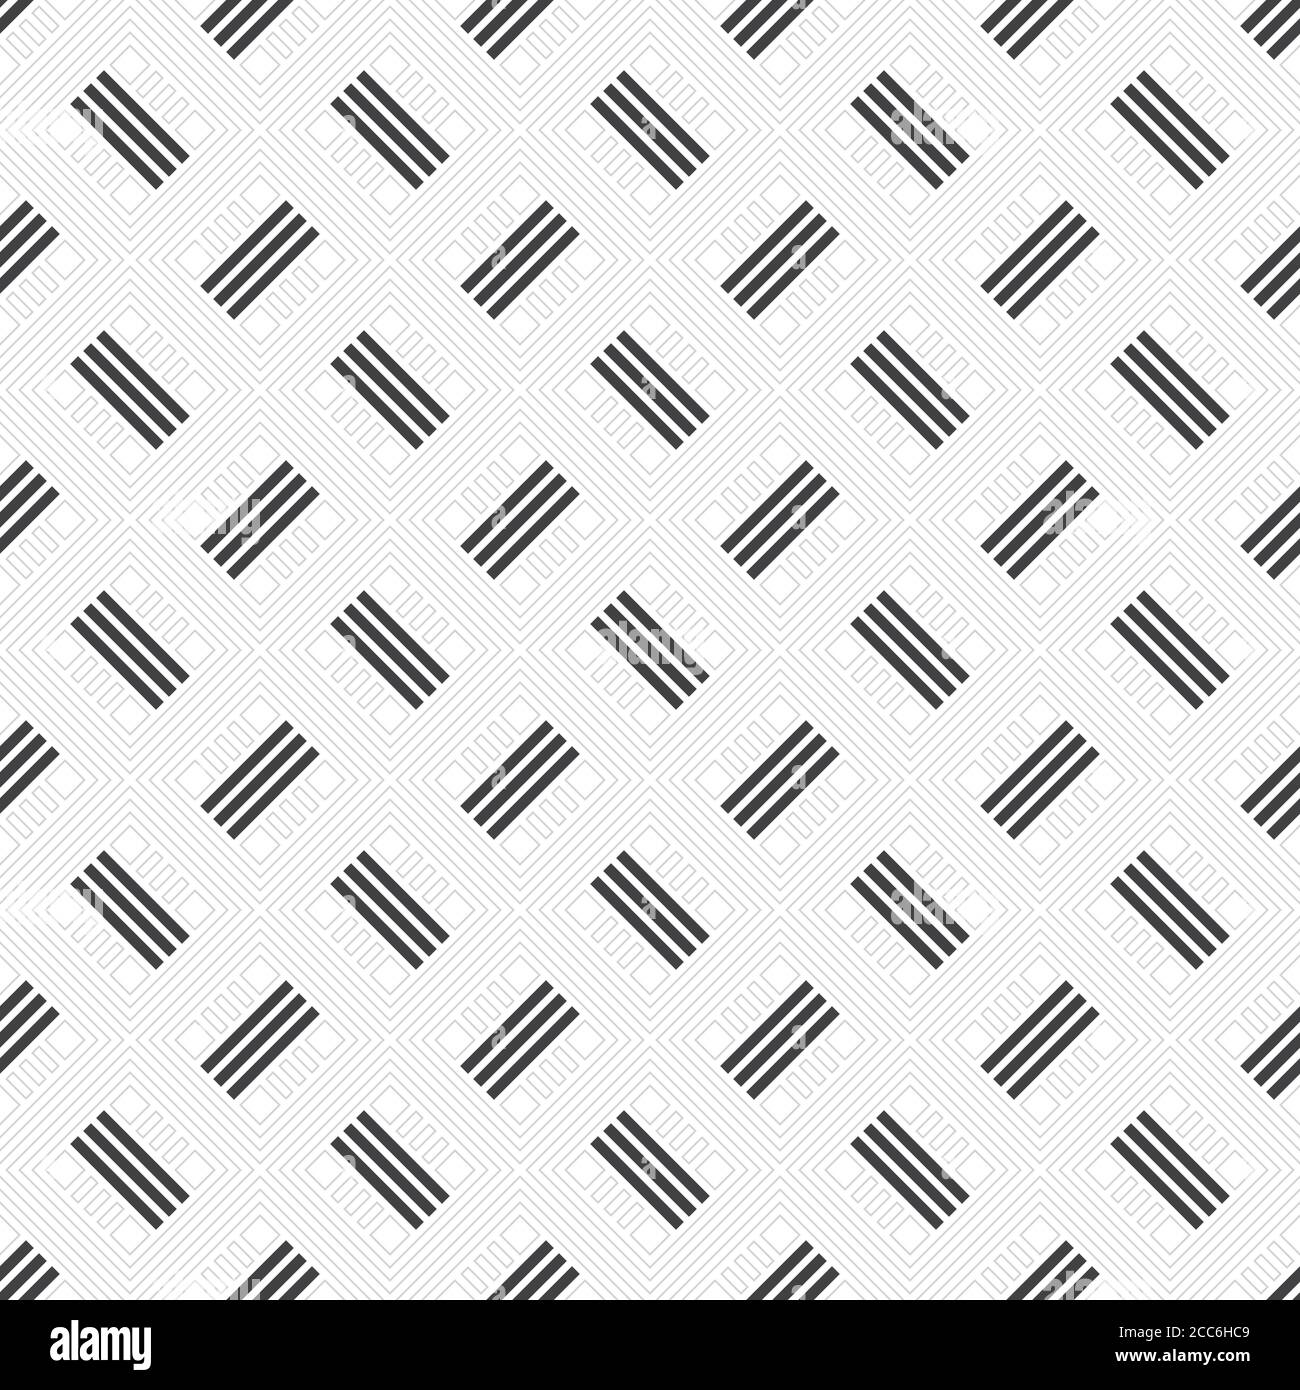 Nahtloses Muster. Moderne, stilvolle Textur mit dünnen Linien. Regelmäßig wiederholendes geometrisches gefliestes Gitter mit Rauten, Diamanten, Streifen. Vektorelement Stock Vektor